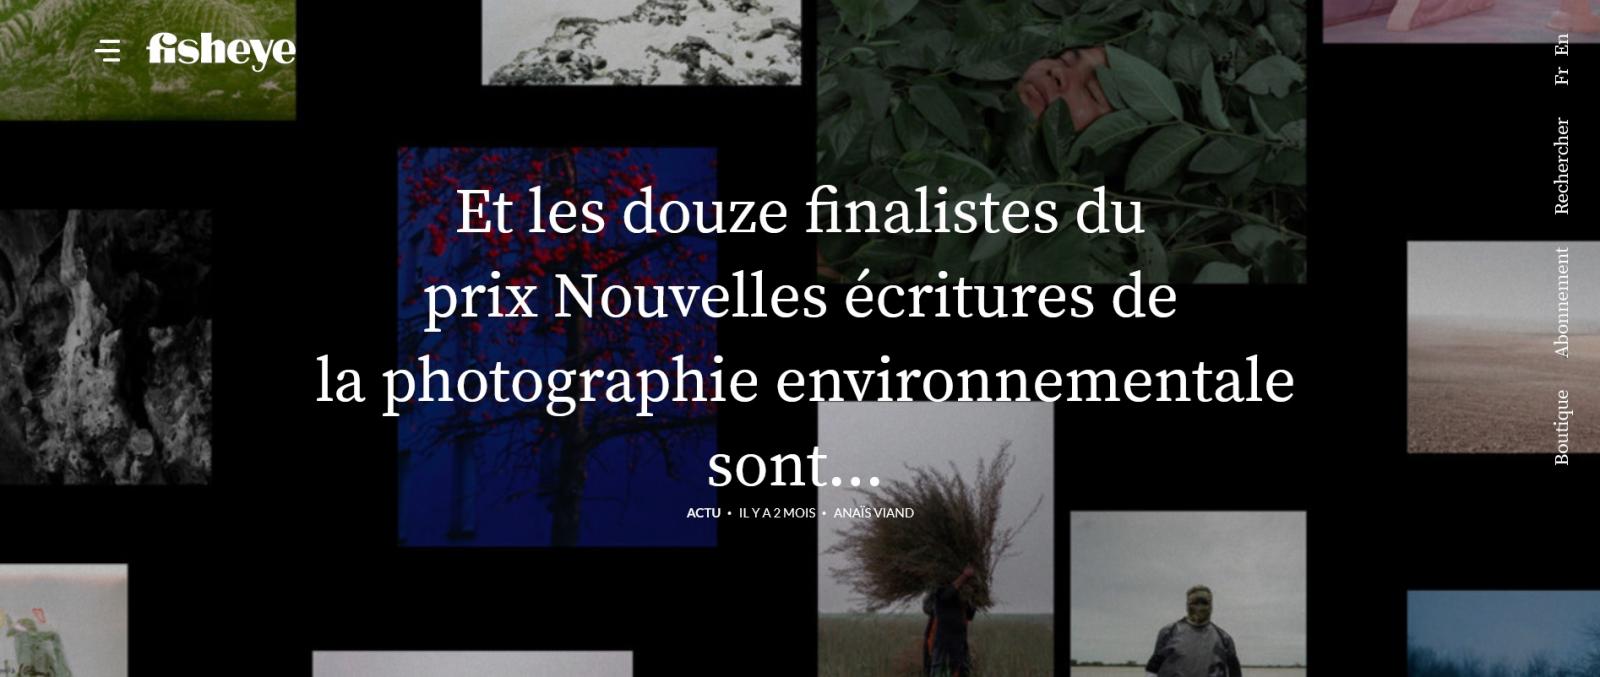 "The Last Man on Earth" - finalist at La Gacilly's Prix Nouvelles écritures de la photographie envinnorementale 